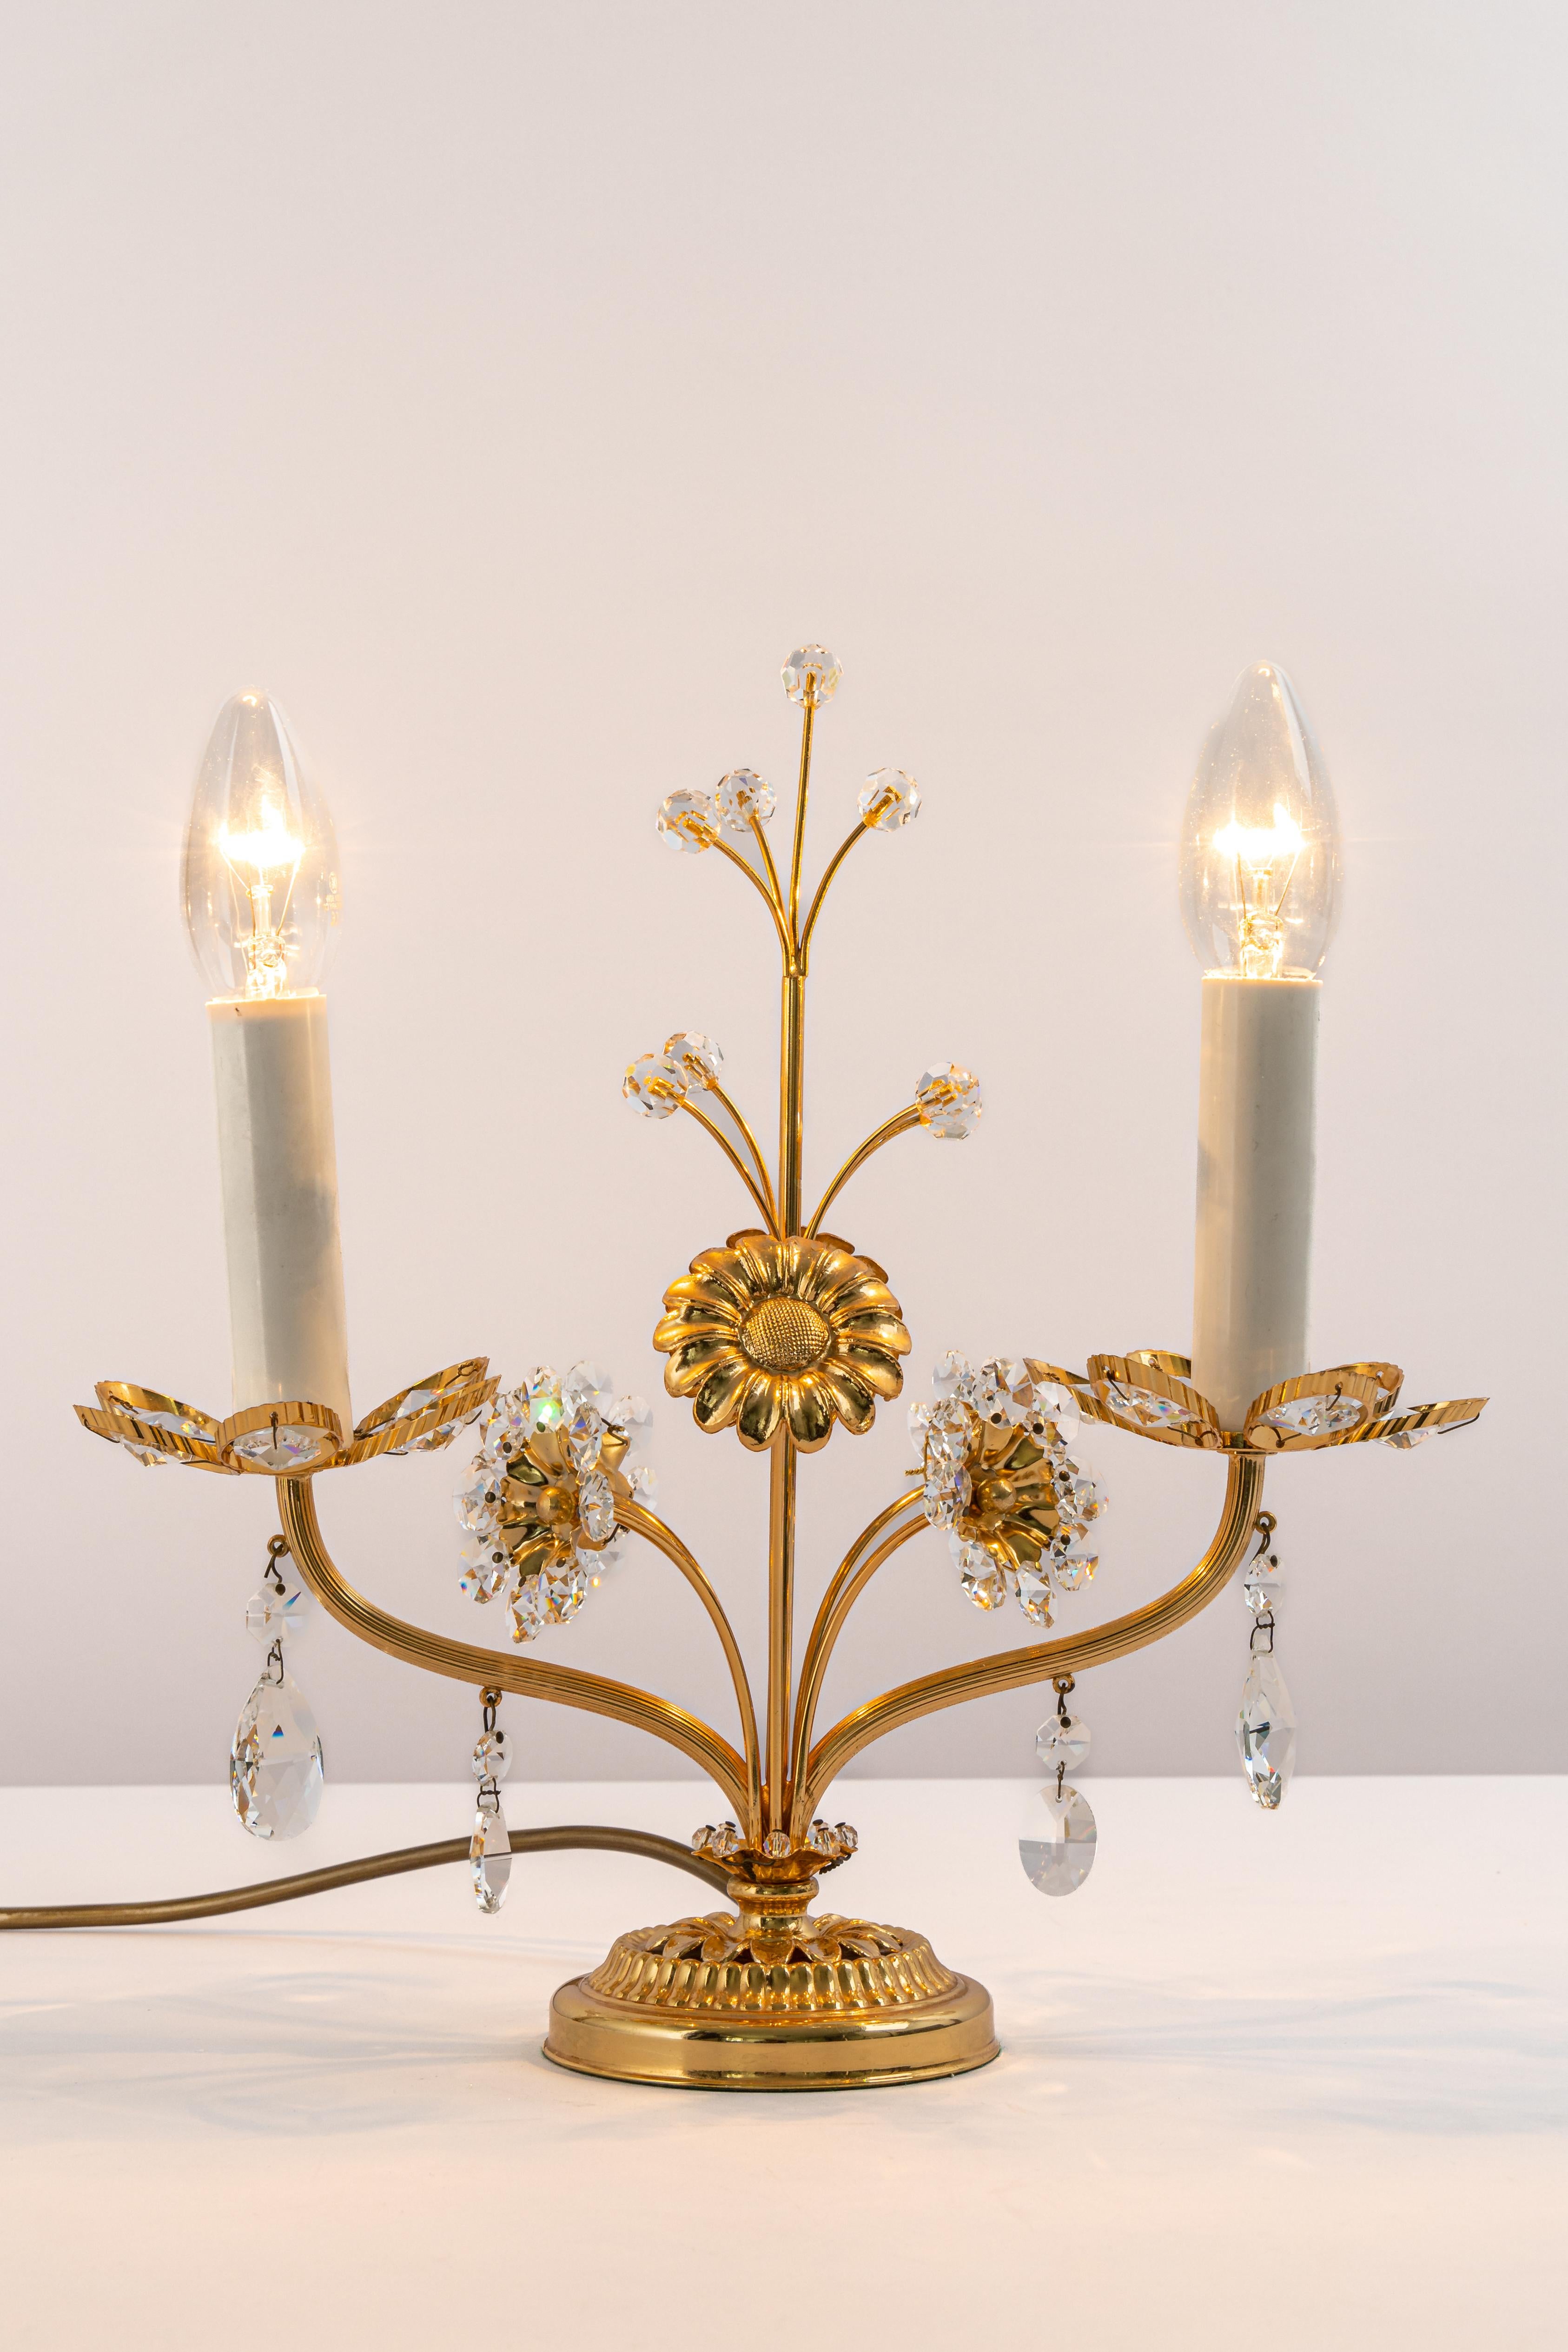 Petite lampe de table étonnante de Palwa, Allemagne, 1970
Cadre en laiton doré et verres en cristal.

Douilles : La lampe de table a besoin de 2 petites ampoules E14 pour s'éclairer.
Les ampoules ne sont pas incluses. Il est possible d'installer